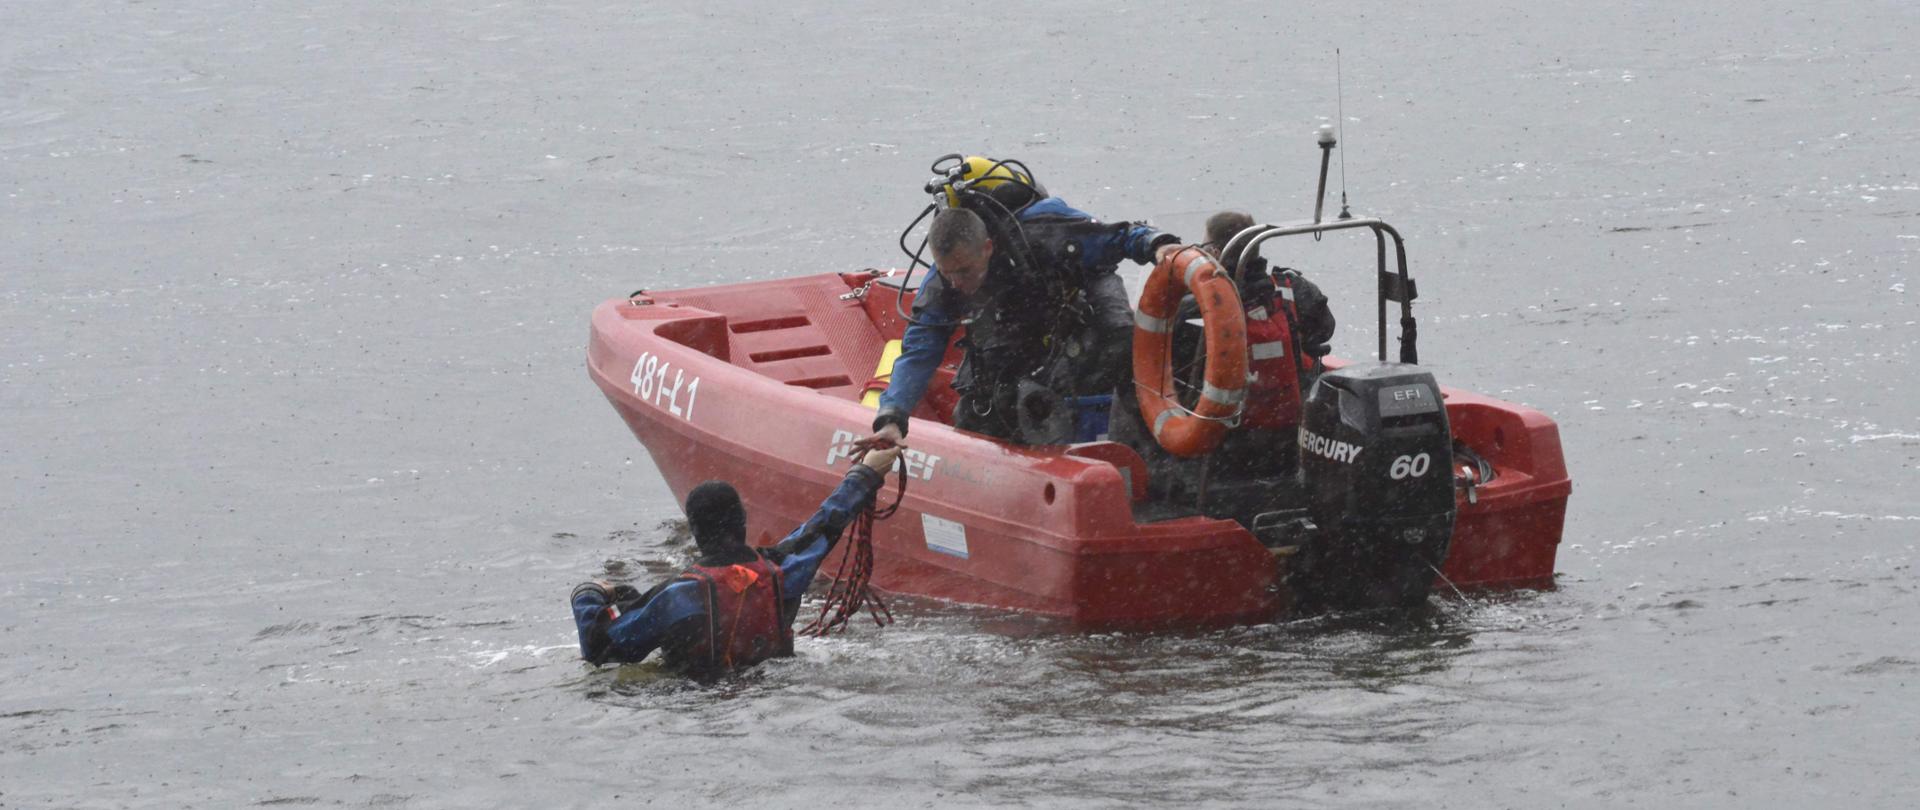 Na zdjęciu widać łódź ratowniczą Państwowej Straży Pożarnej, na jej pokładzie jeden ratownik a drugi ratownik w wodzie. 